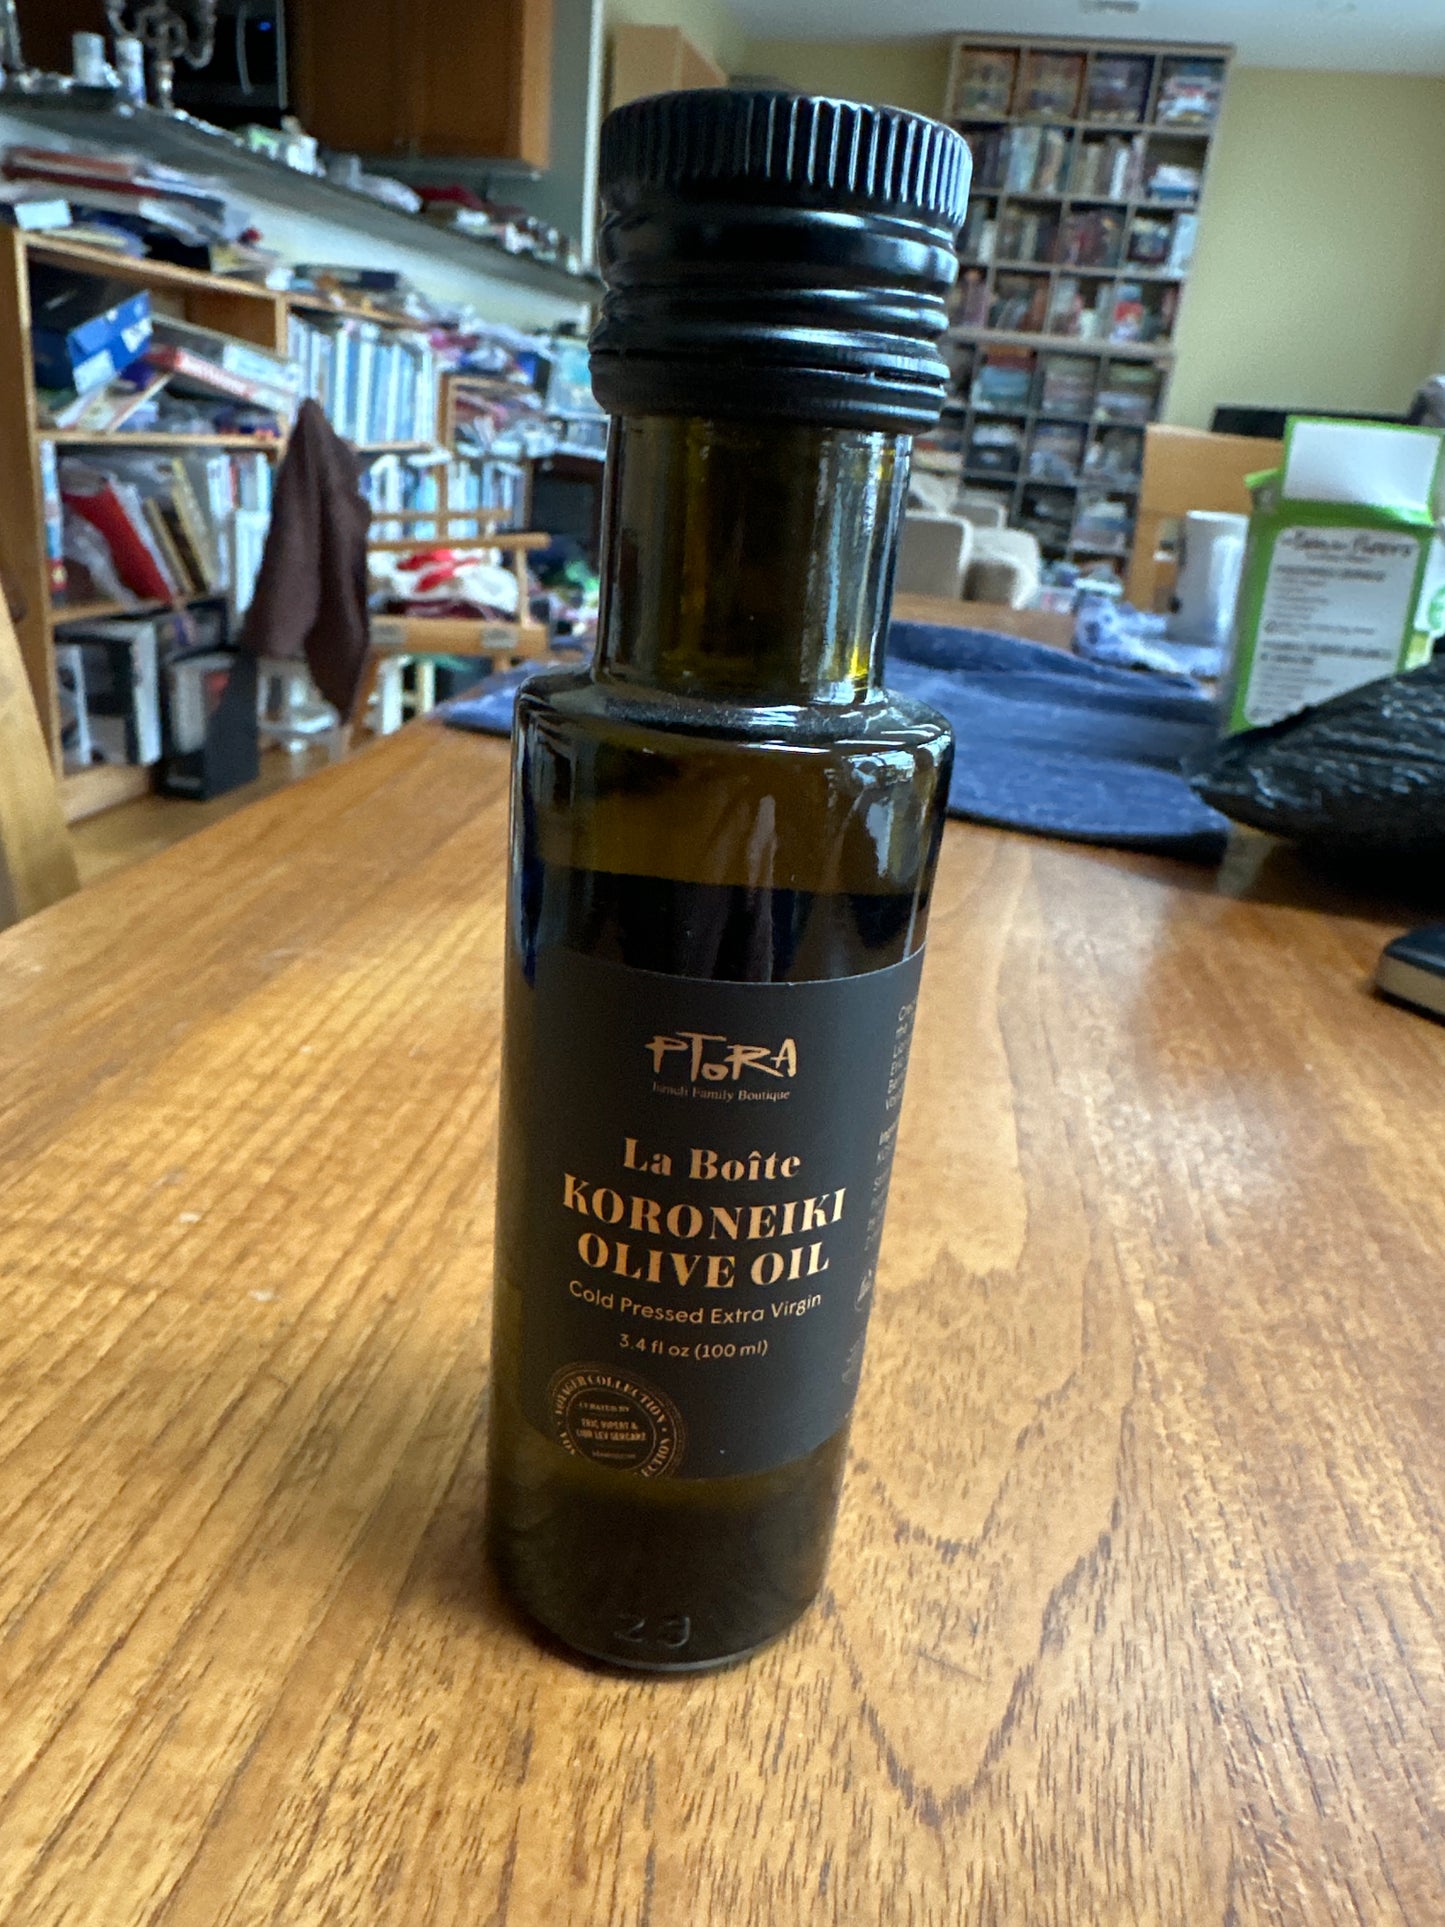 La Boite P’tora olive oil - 3.4 ozs (100 ml) KFP - Made in Israel